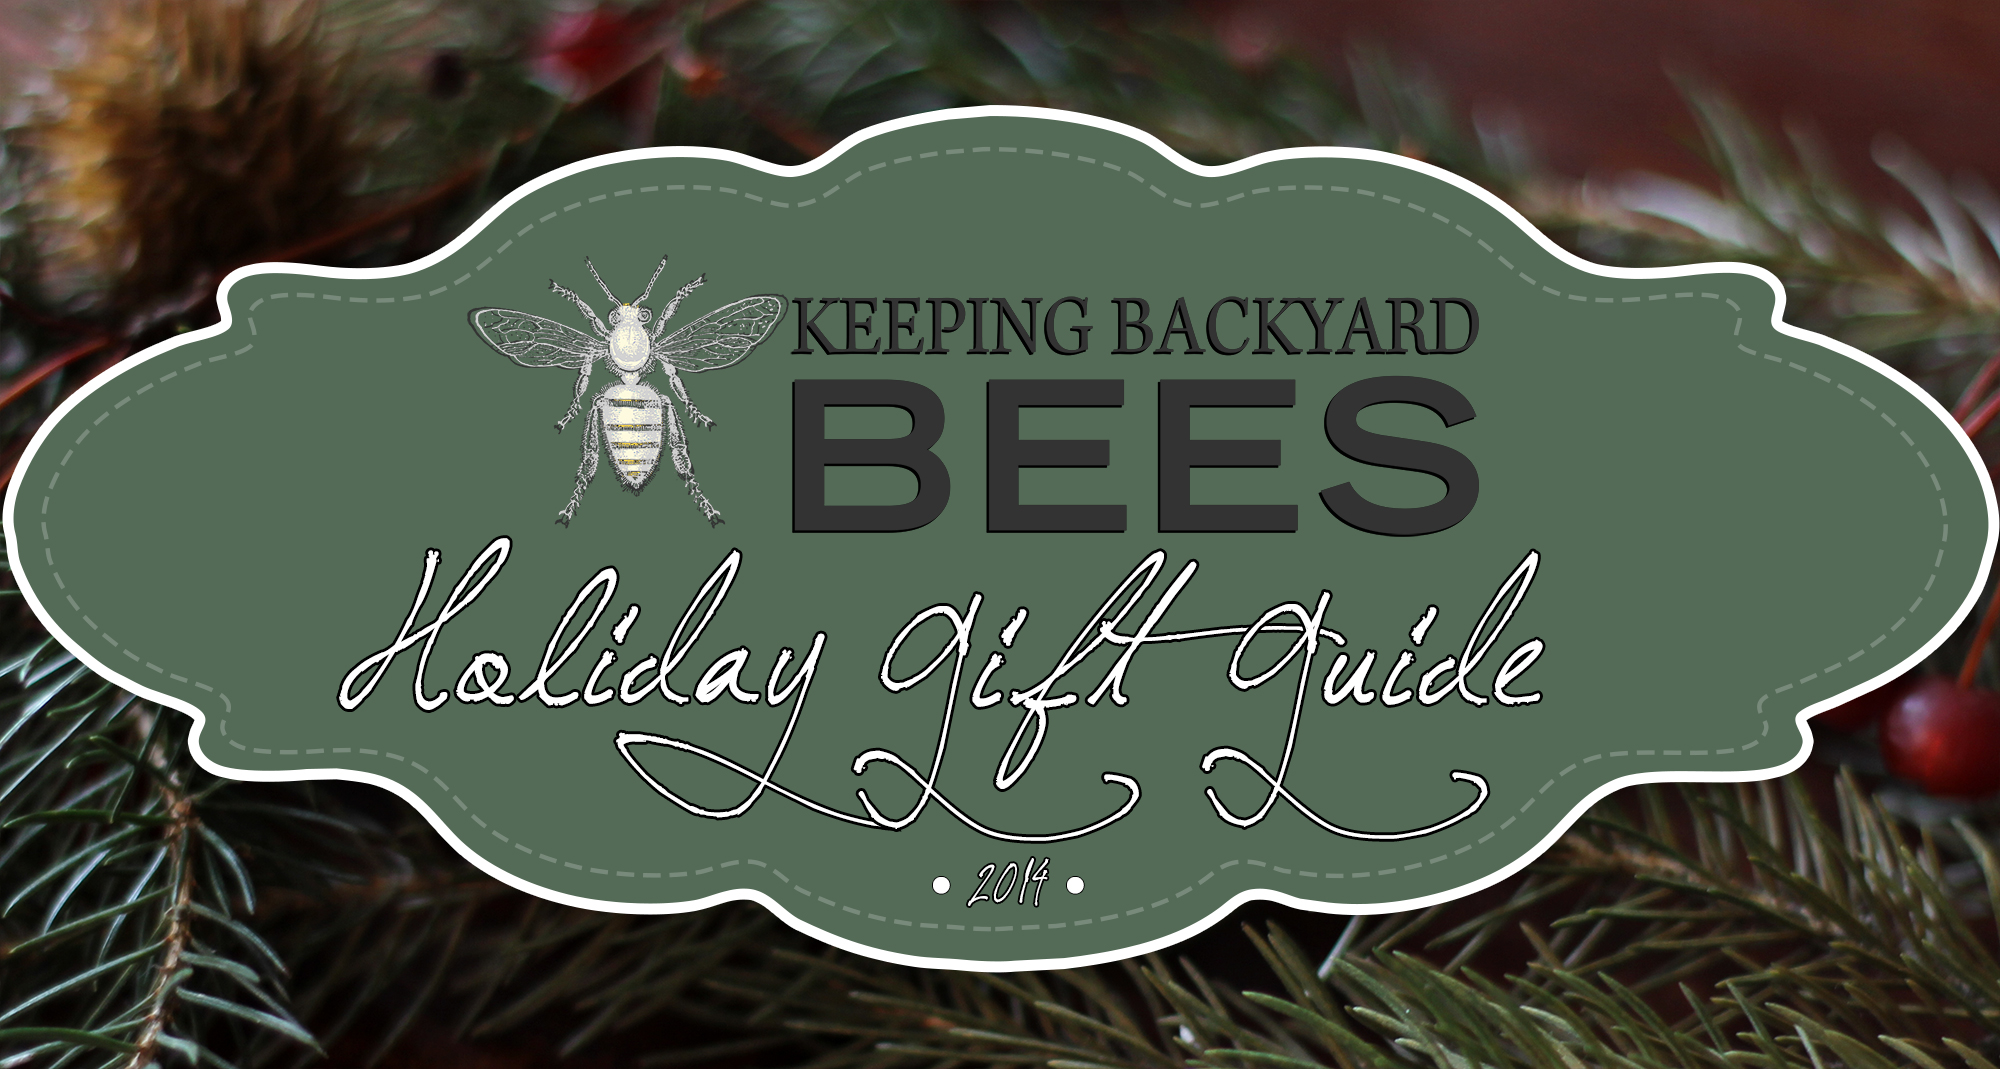 Keeping Backyard Bees Holiday Gift Guide 2014